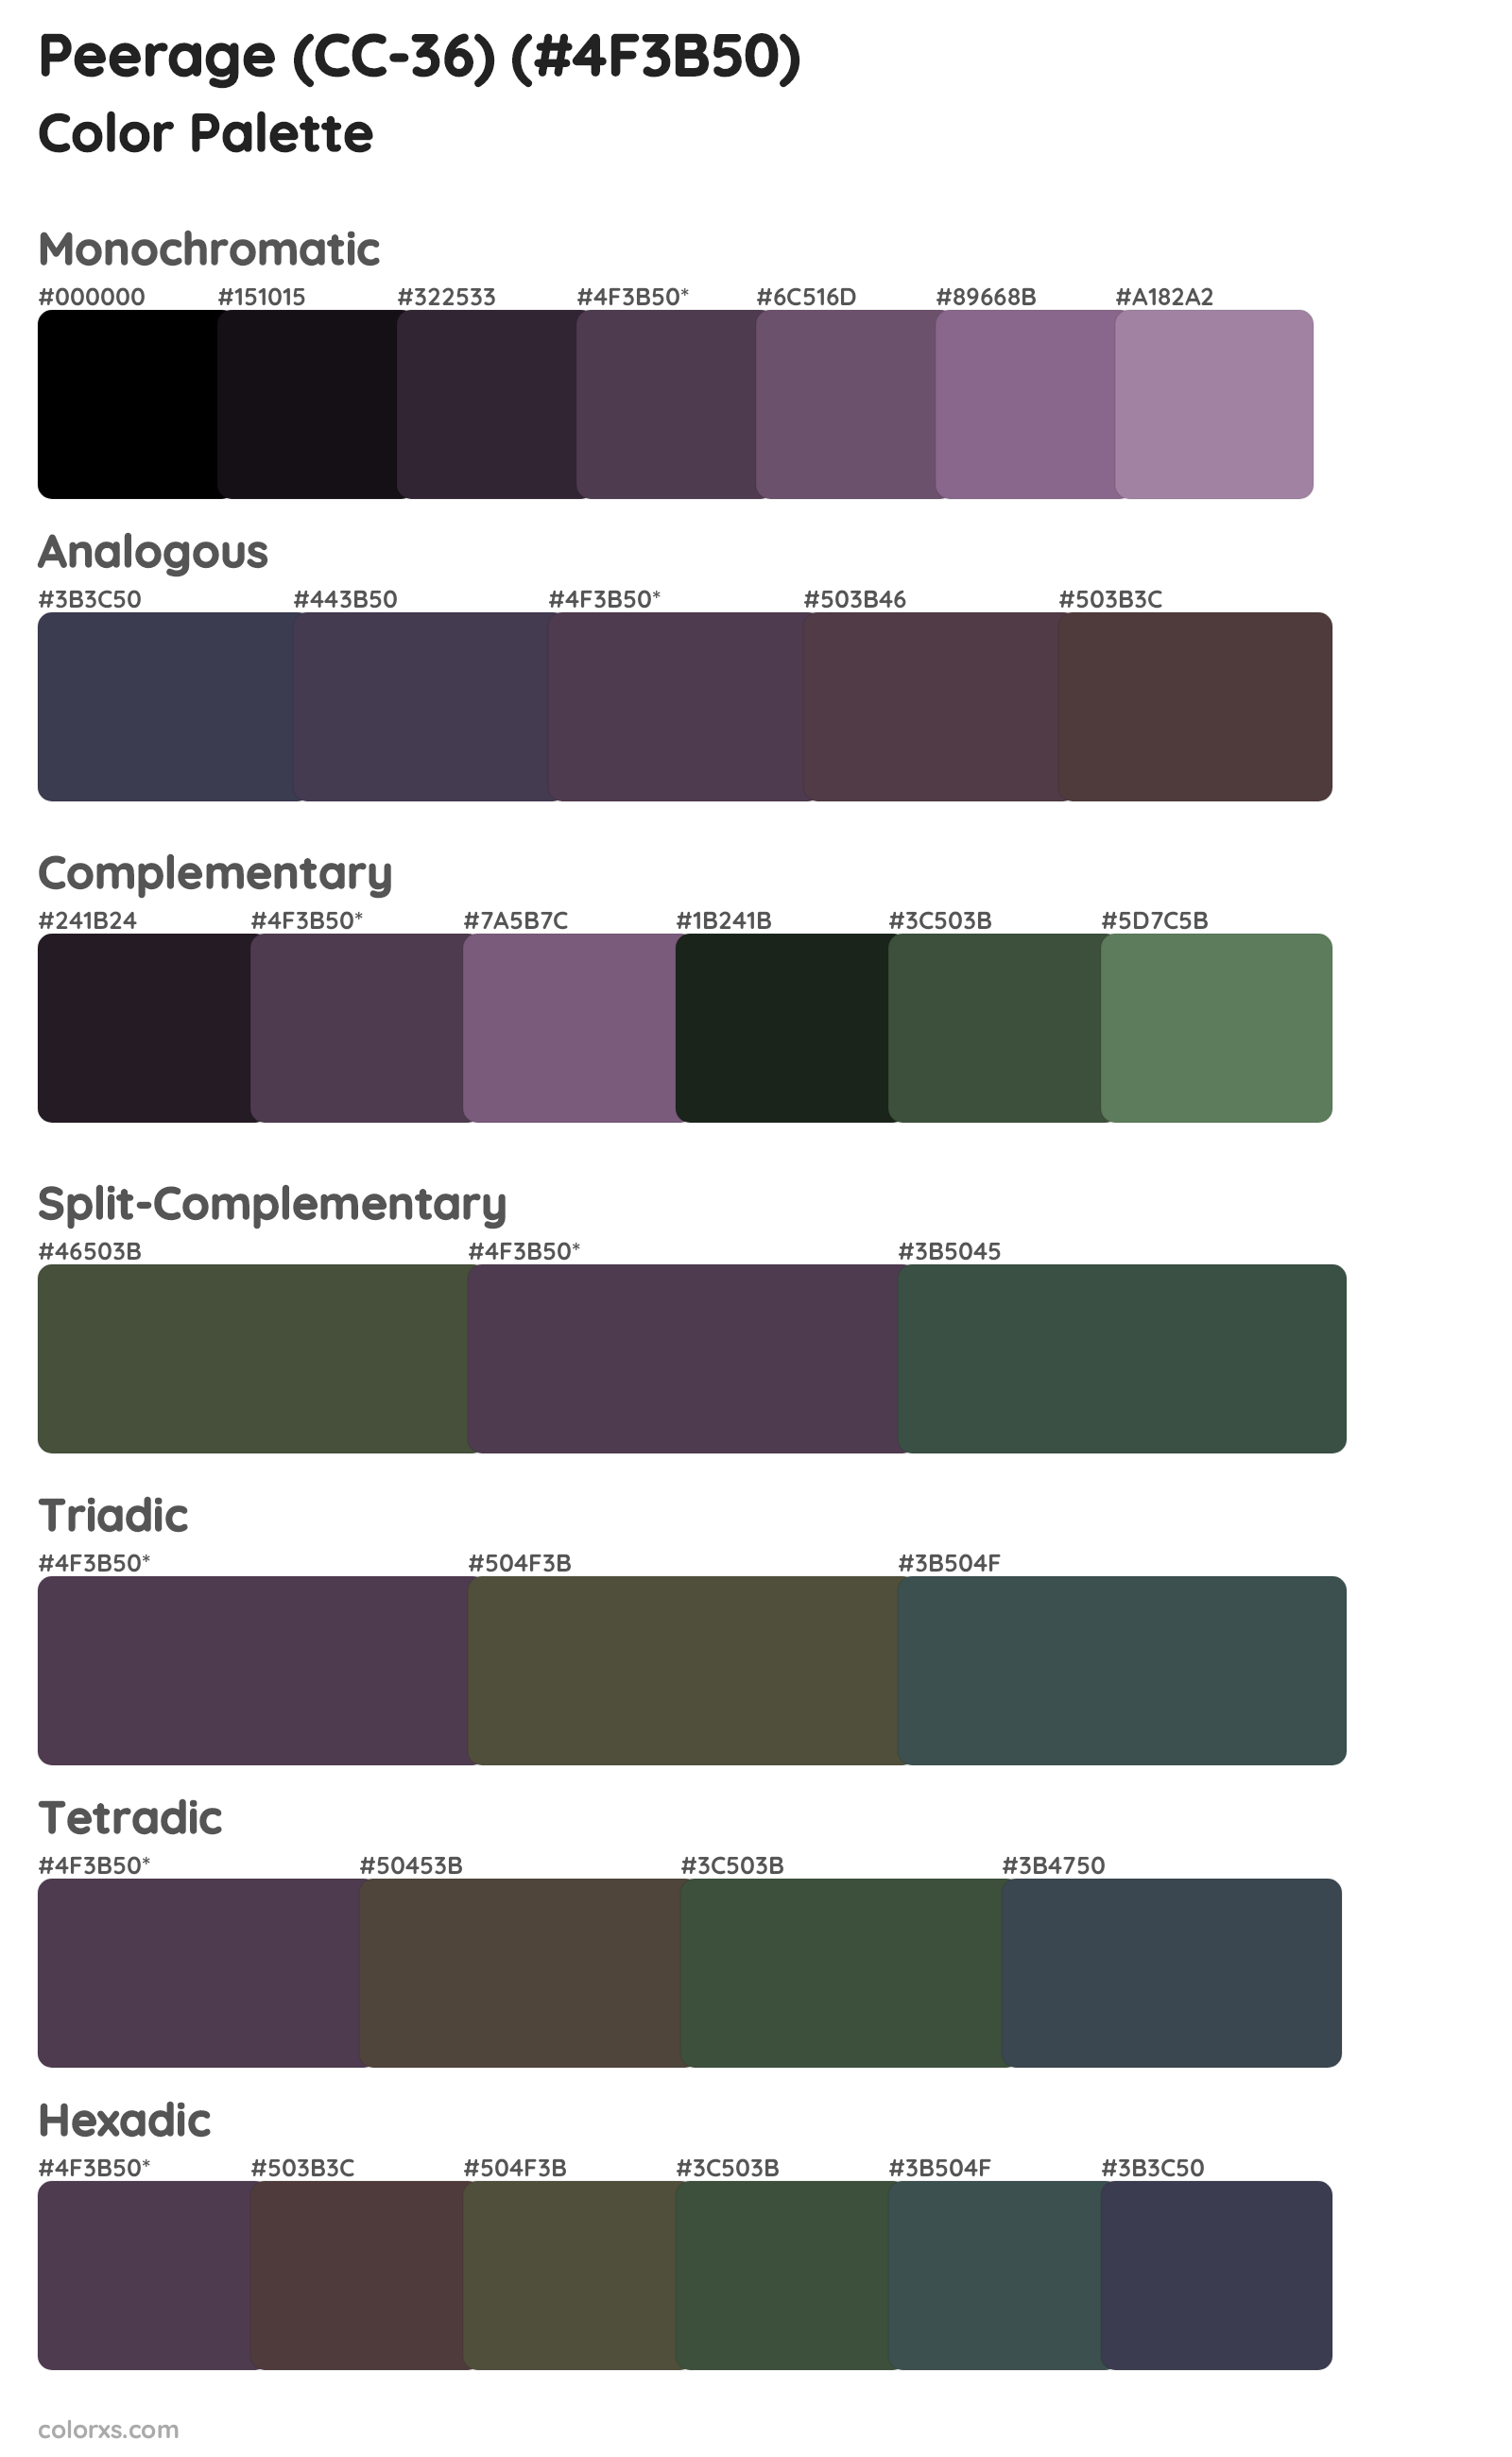 Peerage (CC-36) Color Scheme Palettes